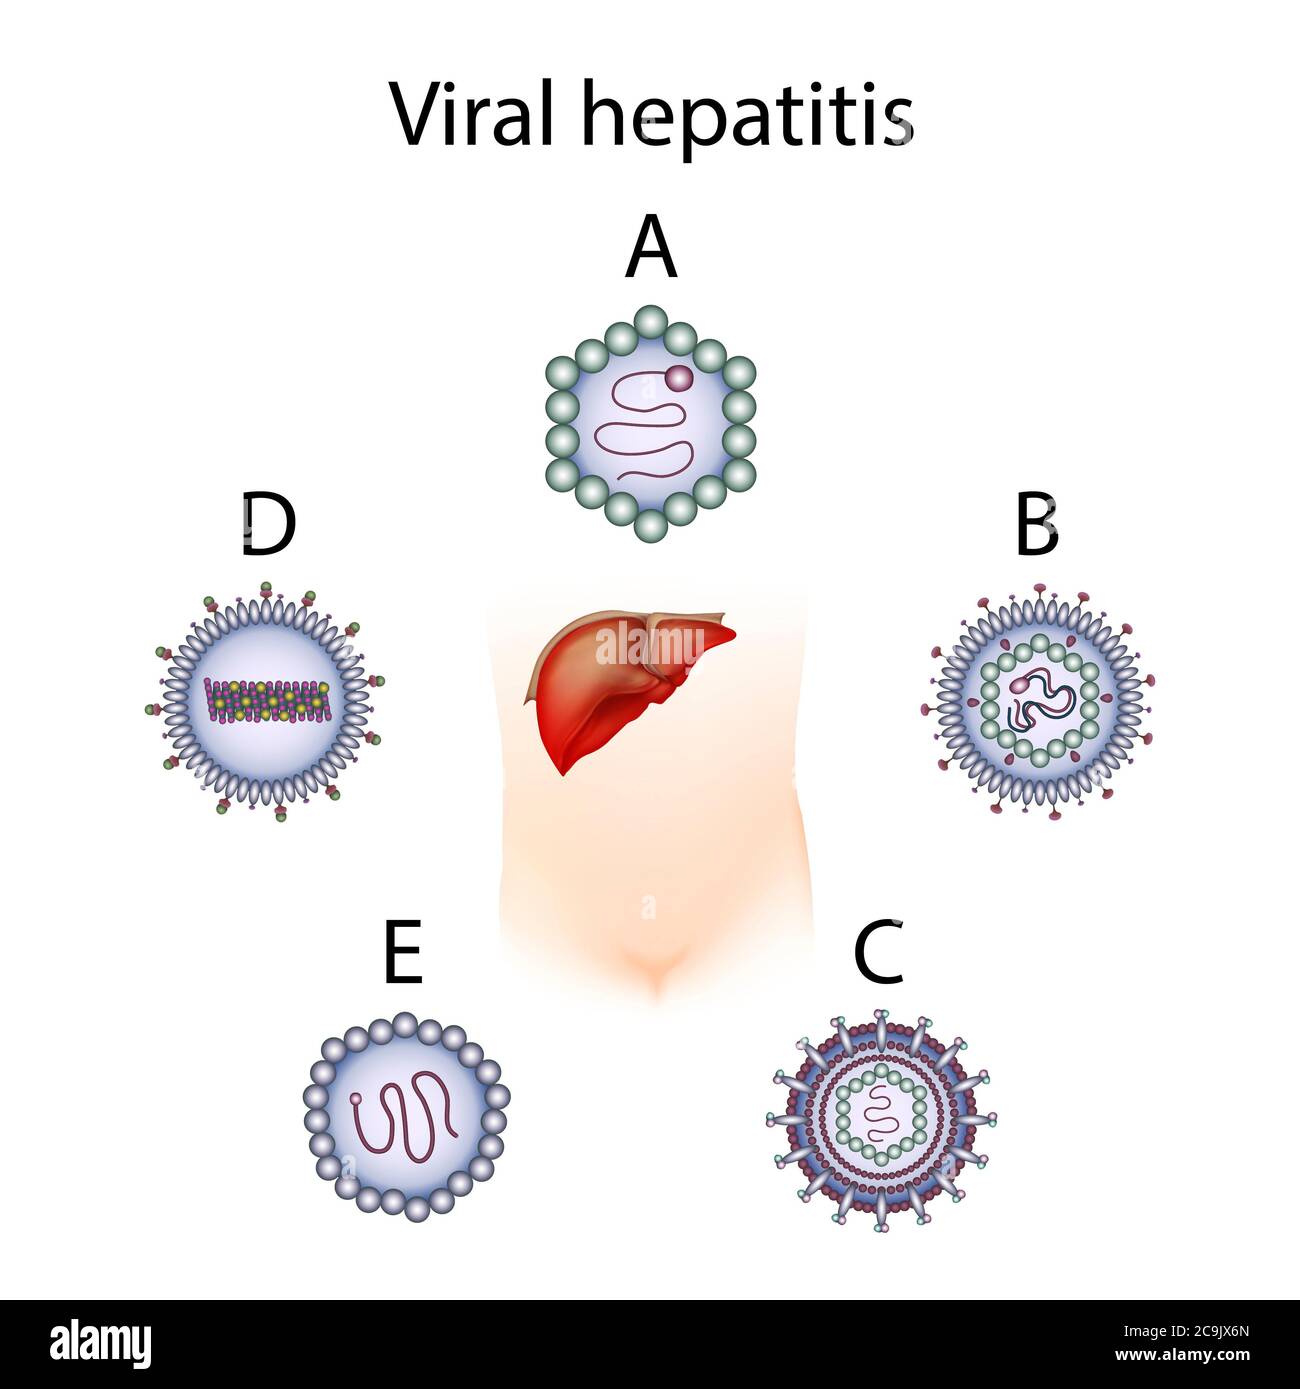 Парентеральное заражение вирусными гепатитами